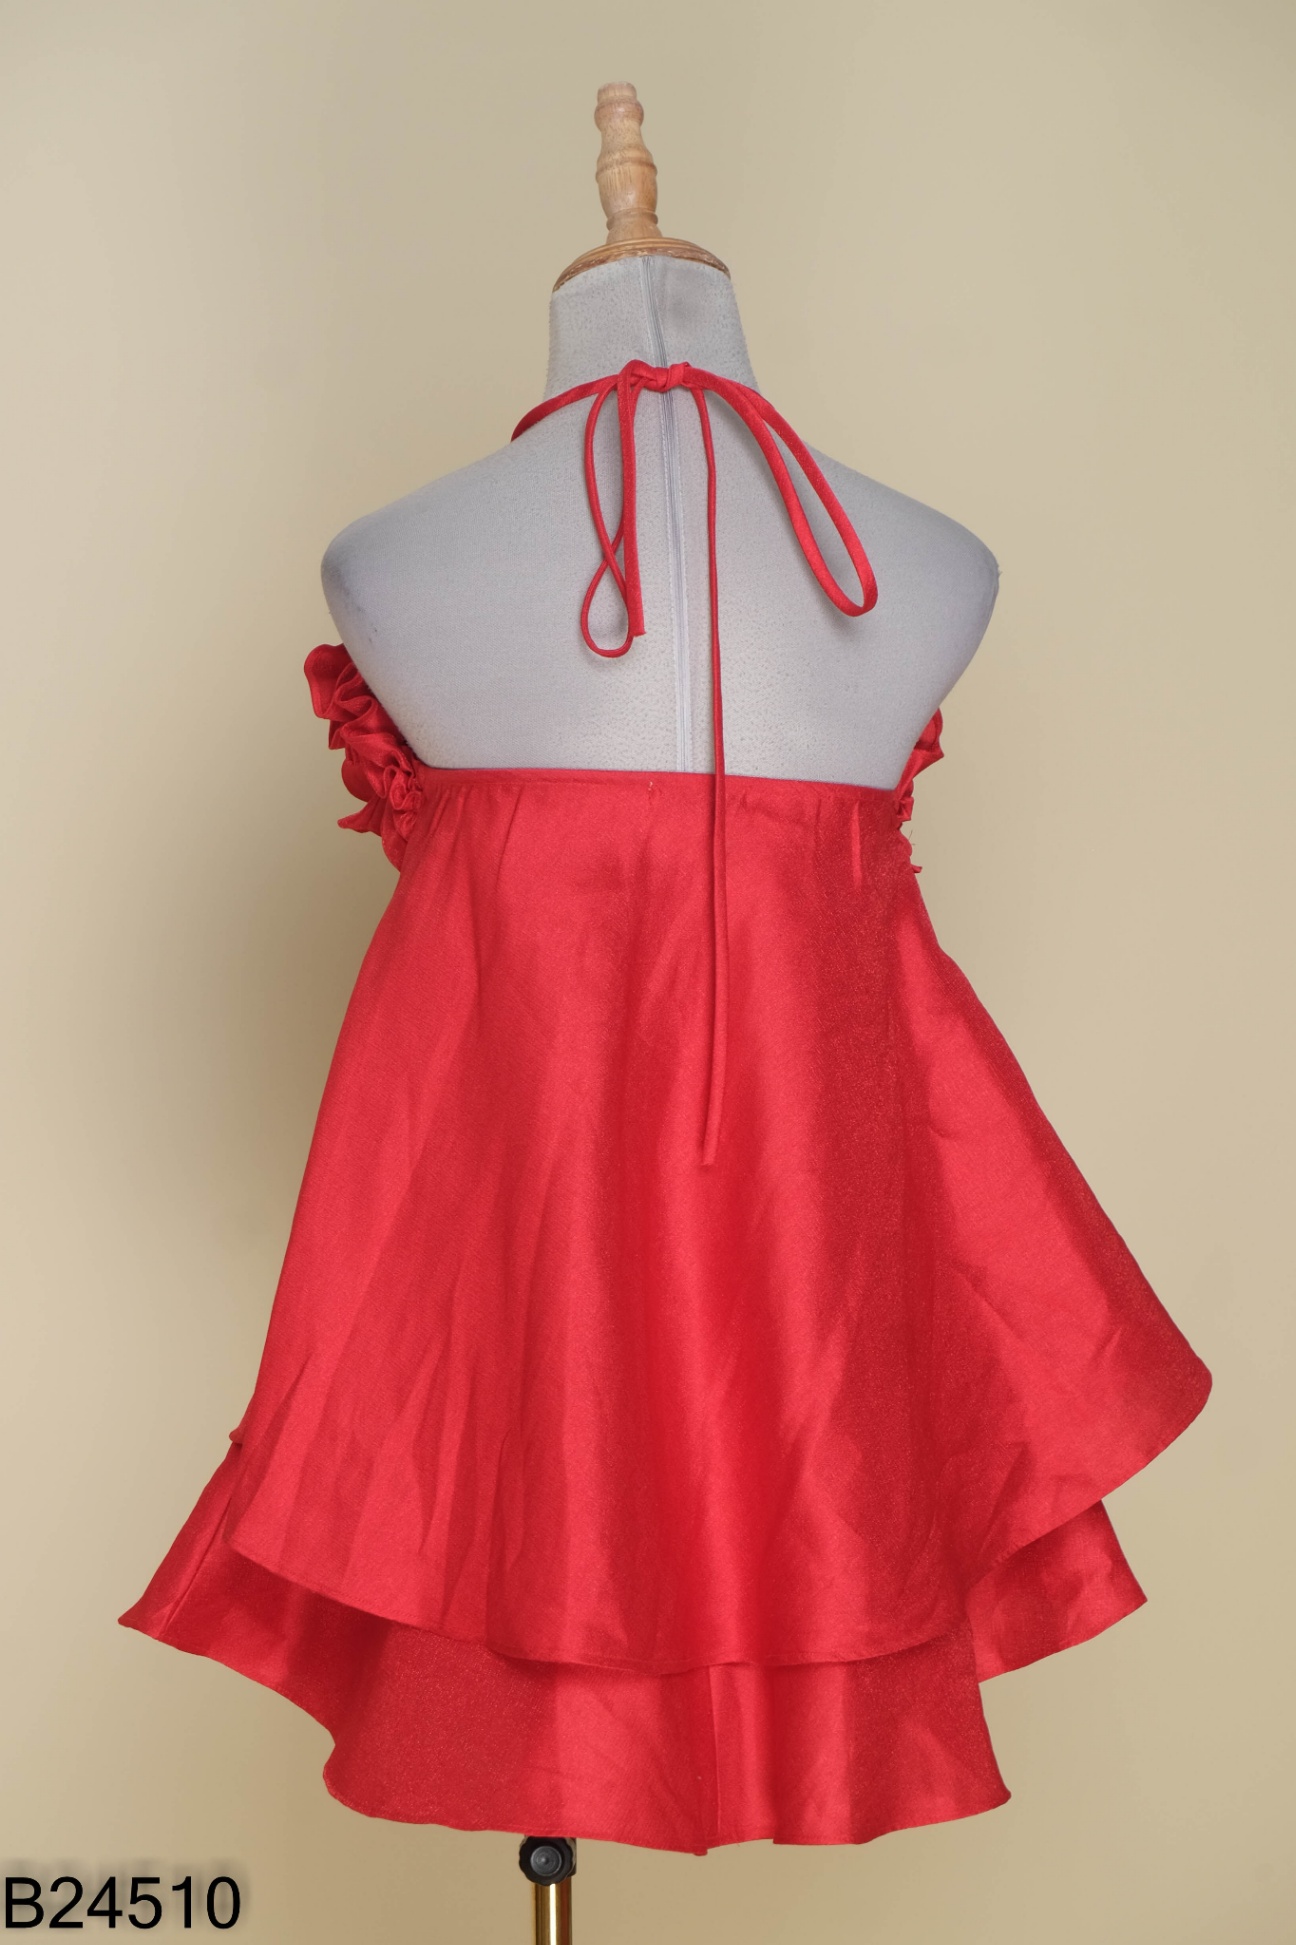 Đầm ôm body cổ yếm phối dây sọc đỏ trắng cực xinh - Hàng đẹp với giá tốt  nhất